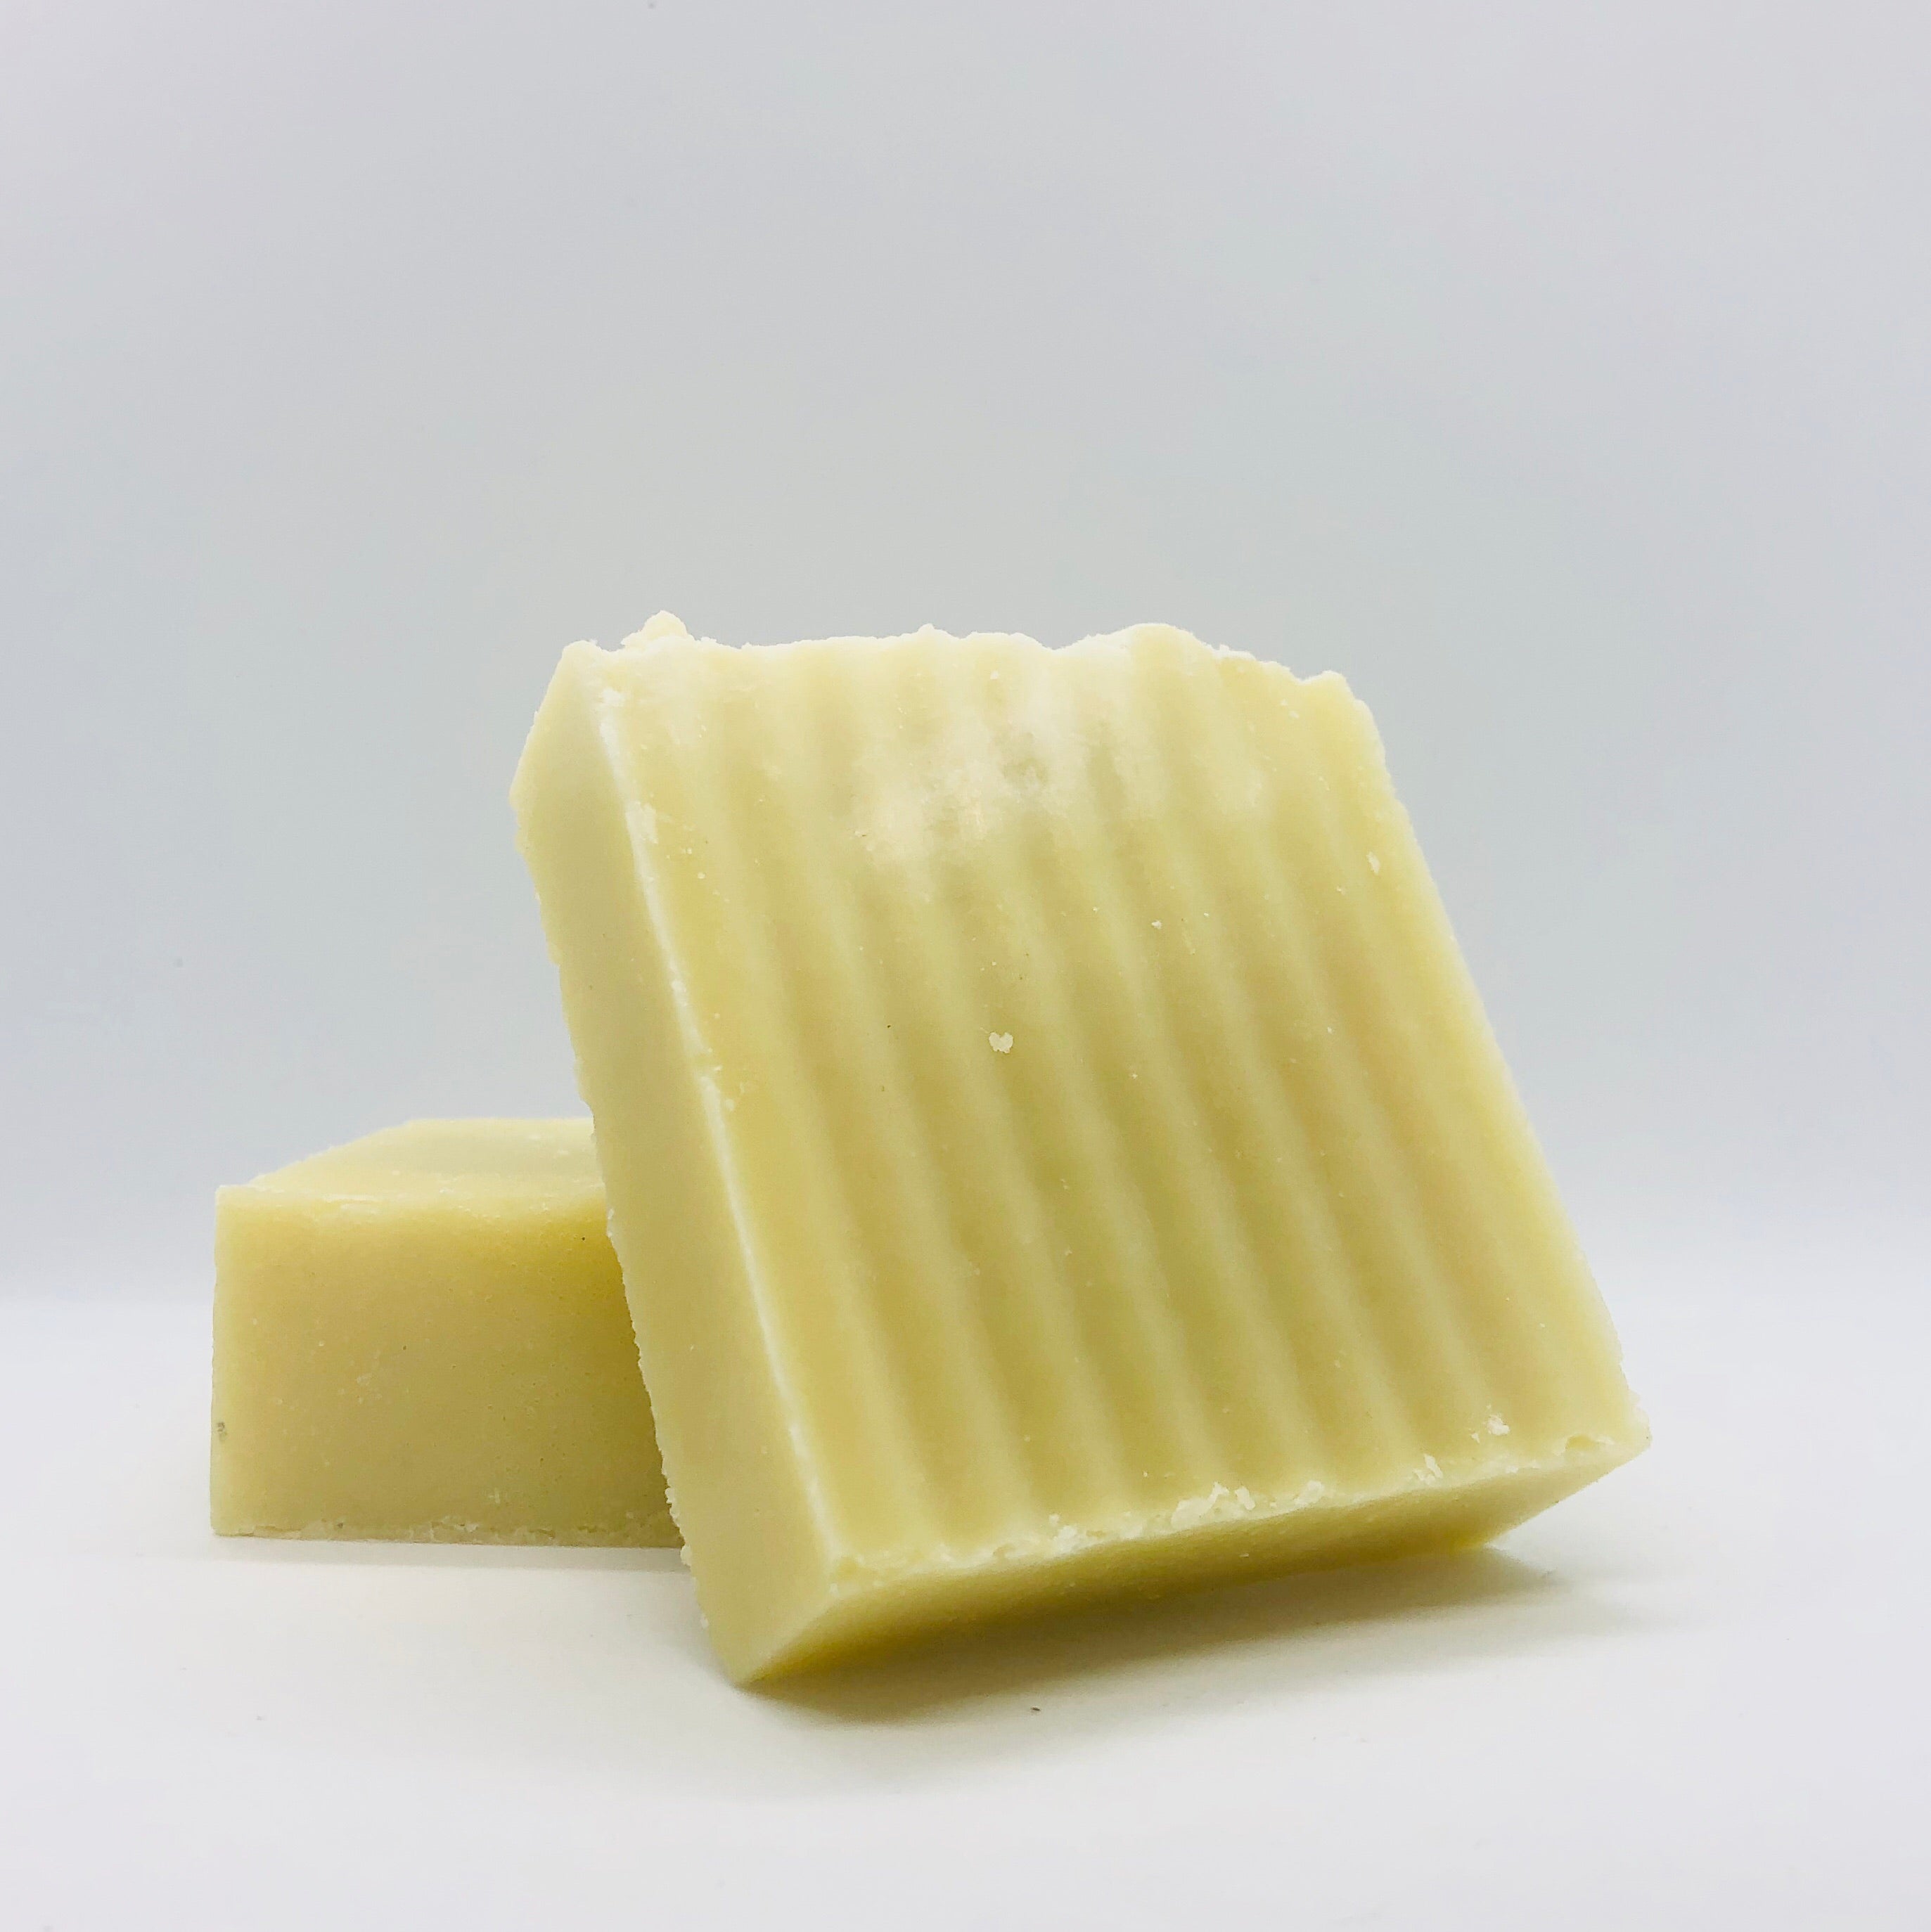 Castile Bar Soap